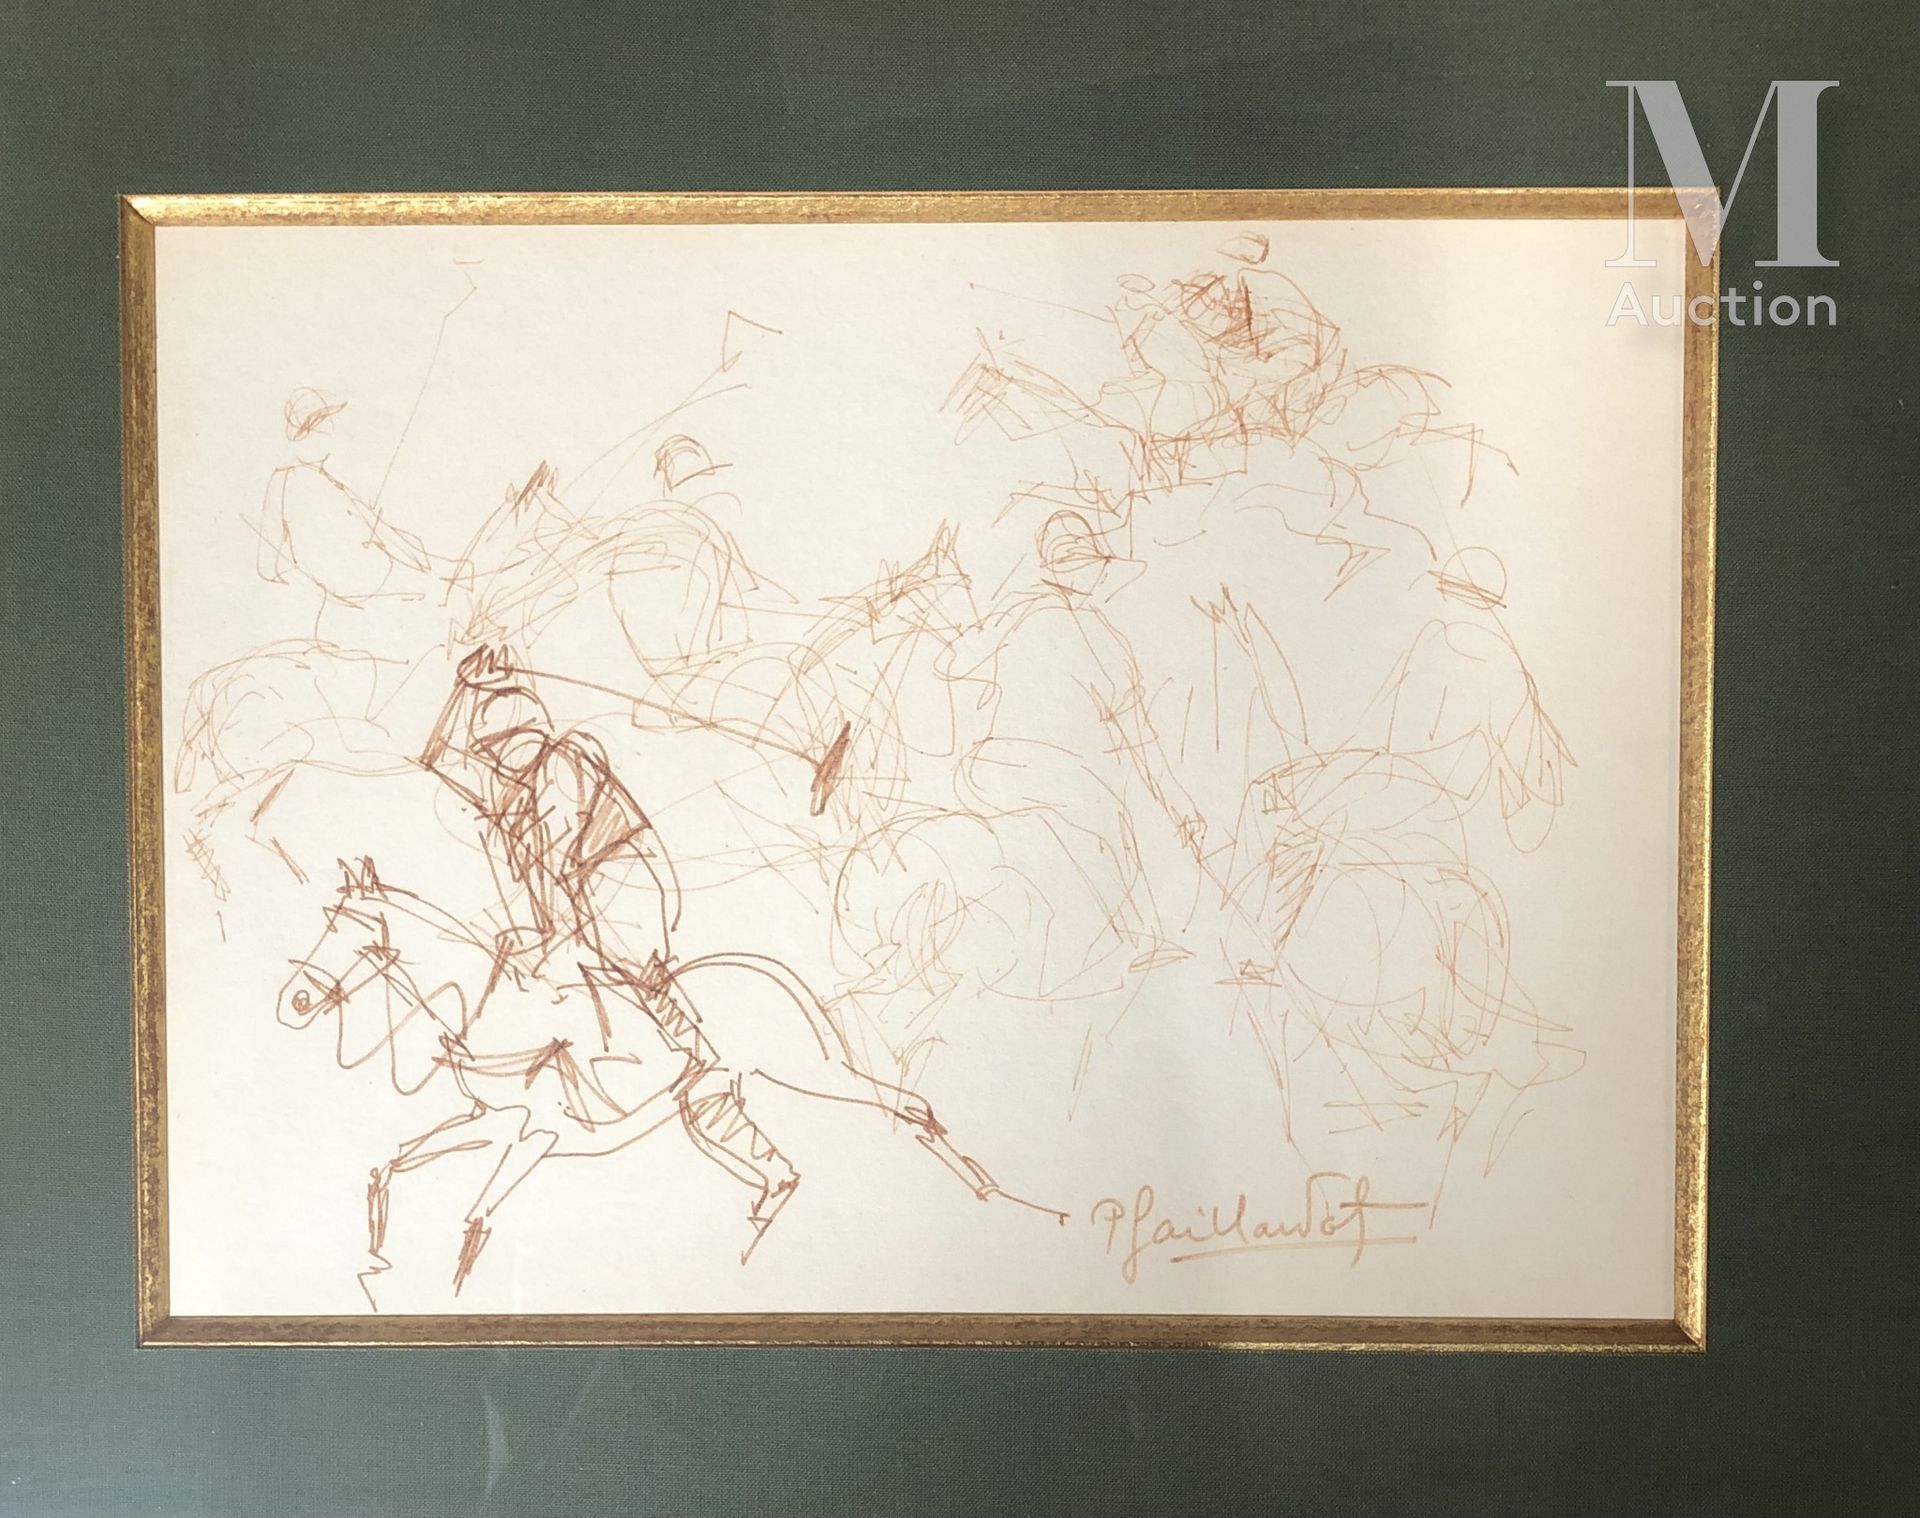 Pierre GAILLARDOT (1910-2002) 马球运动员

两张图的套系

纸上水墨

右下方有签名

20 x 28 cm